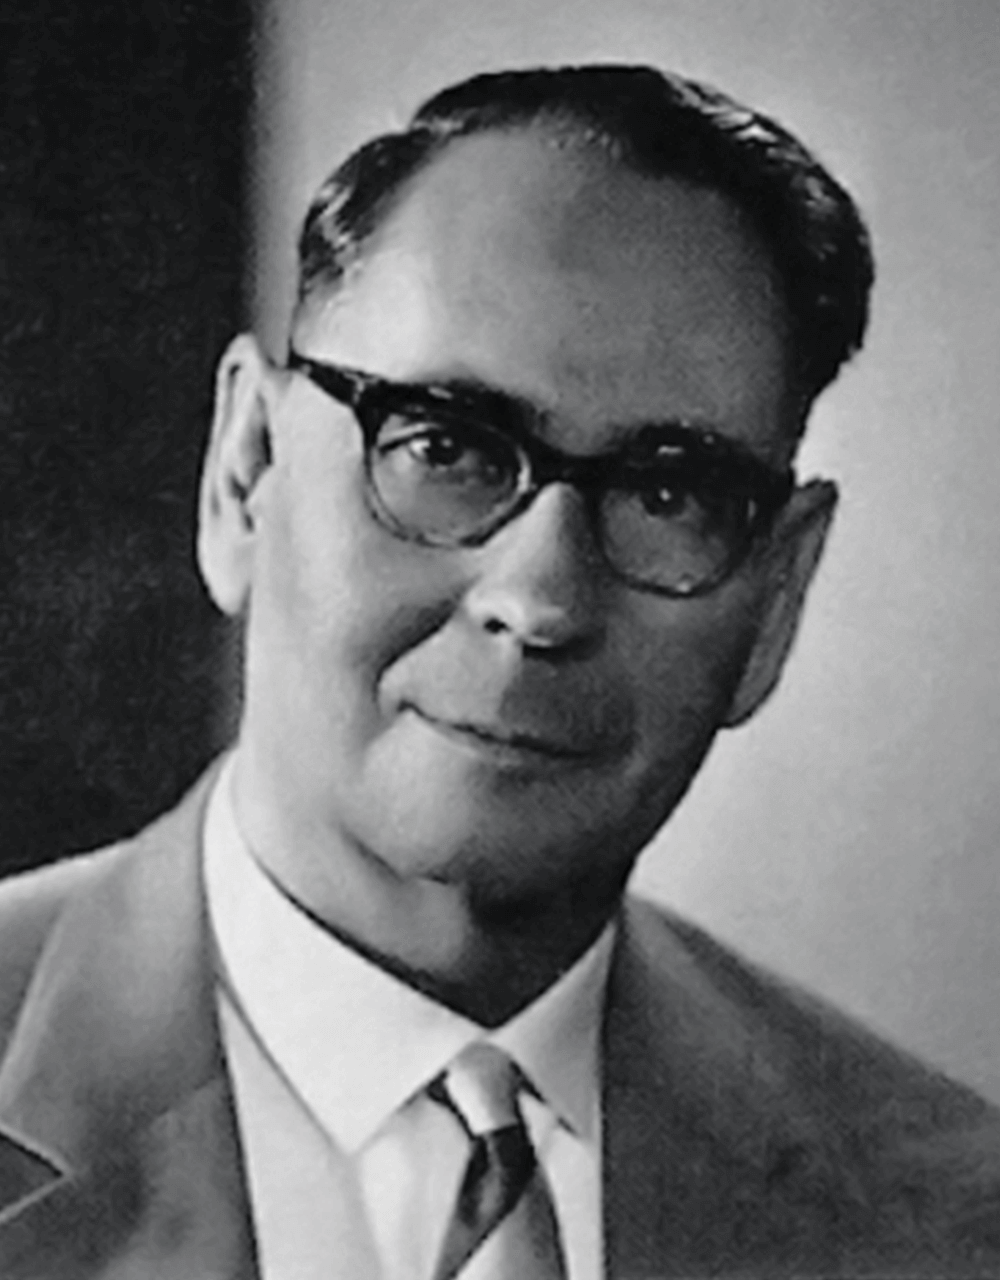 Karlheinrich Heller——1941 年，Karlheinrich Heller 承擔公司管理責任